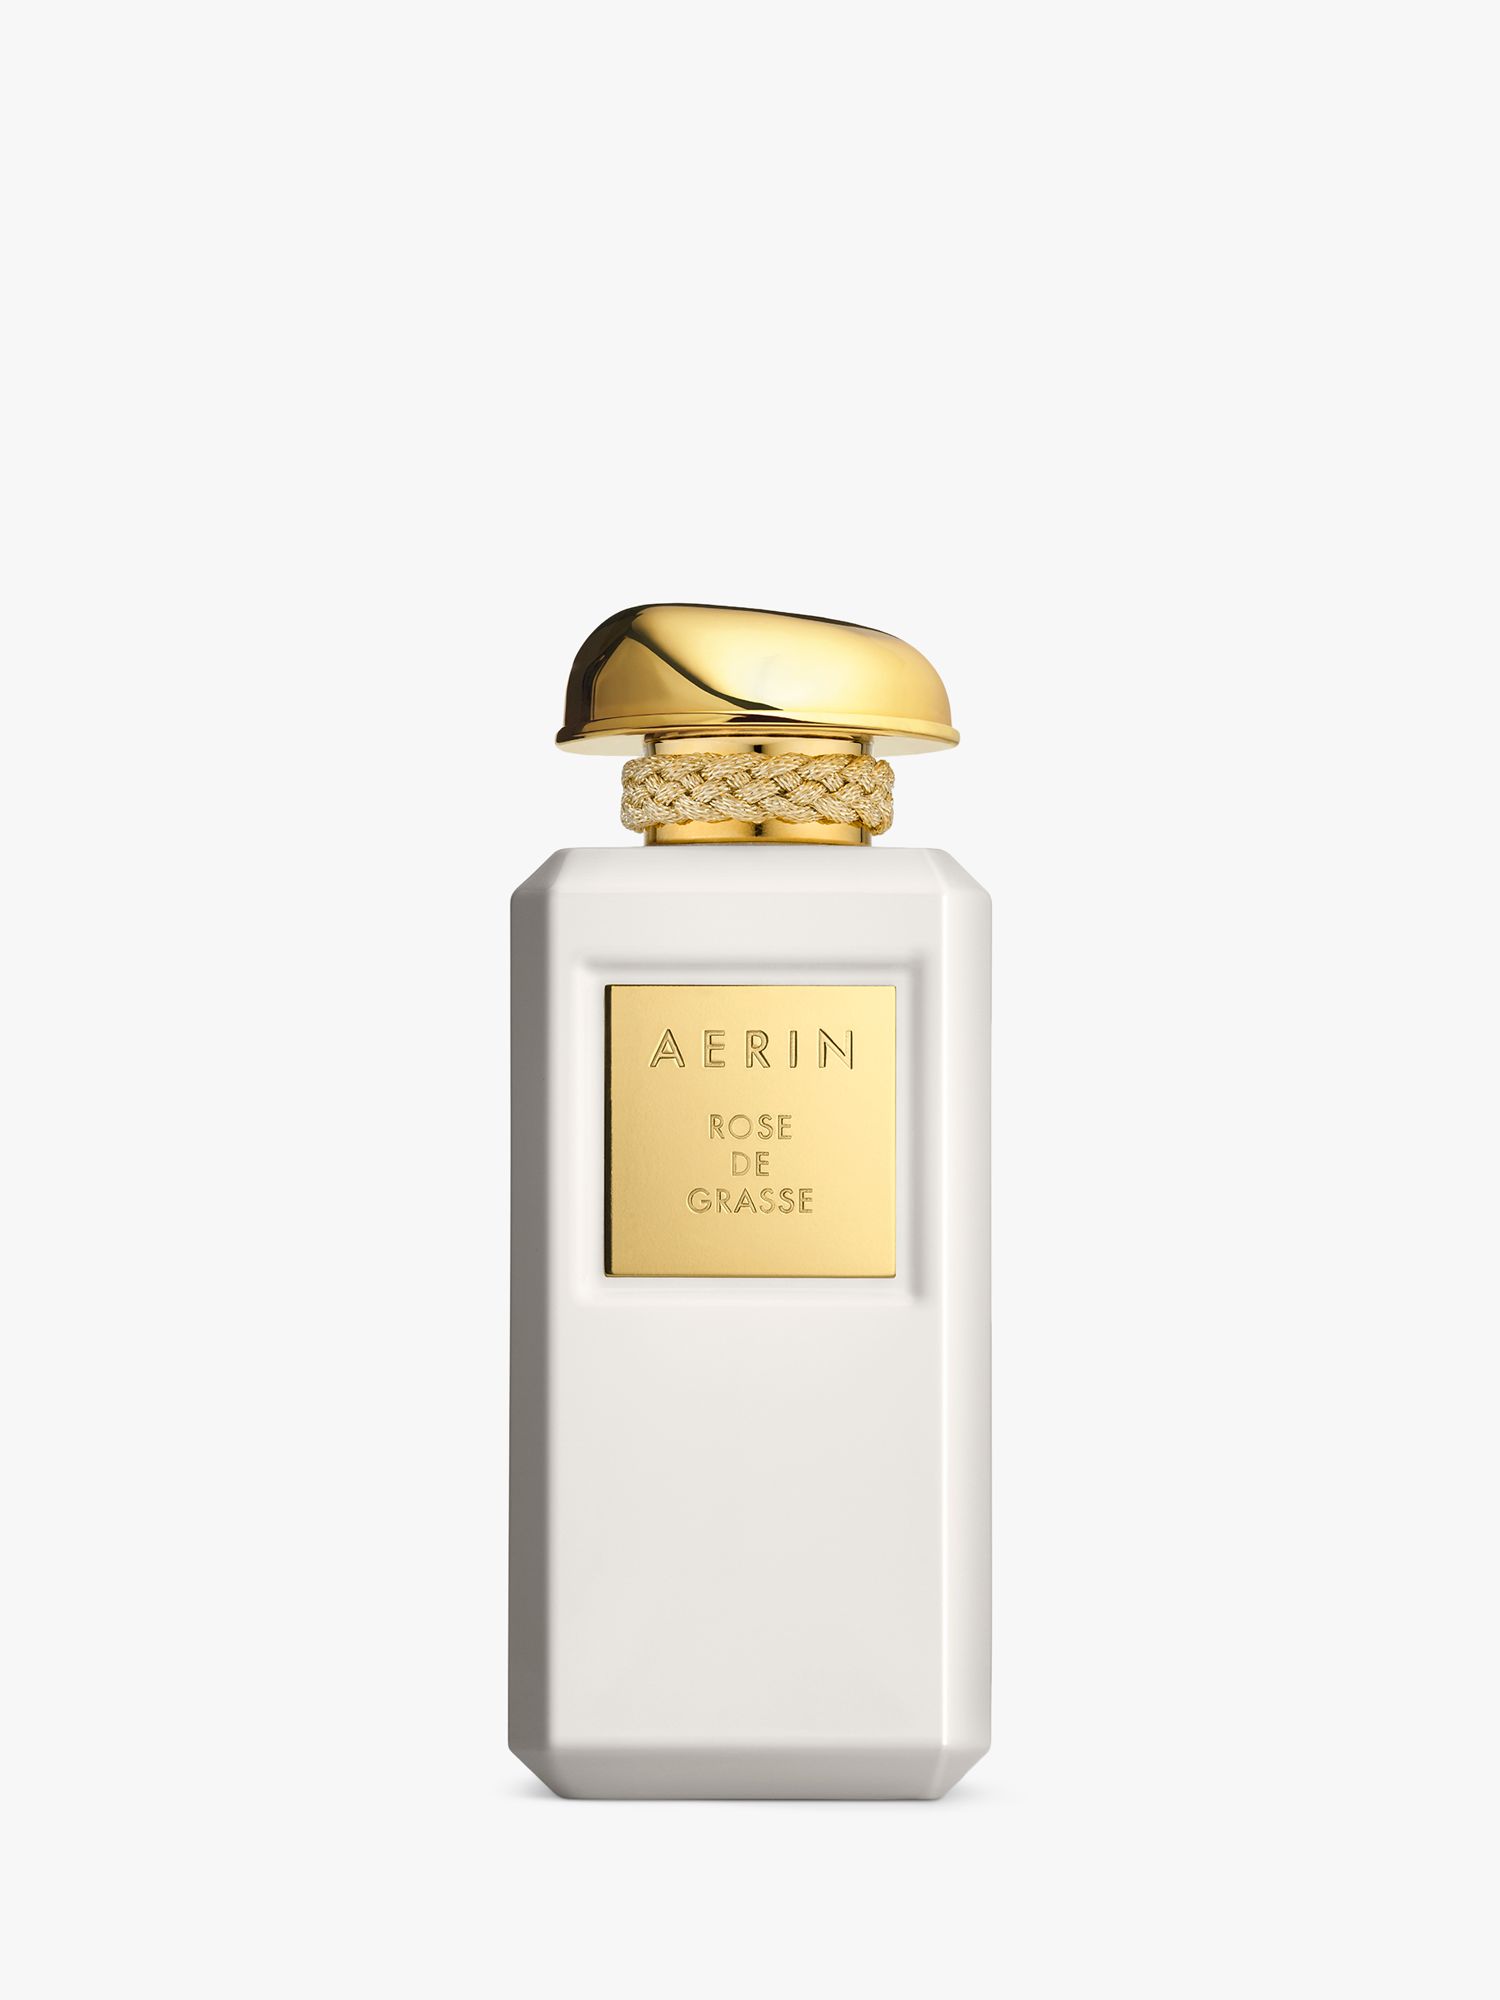 AERIN Rose de Grasse Parfum, 100ml 1